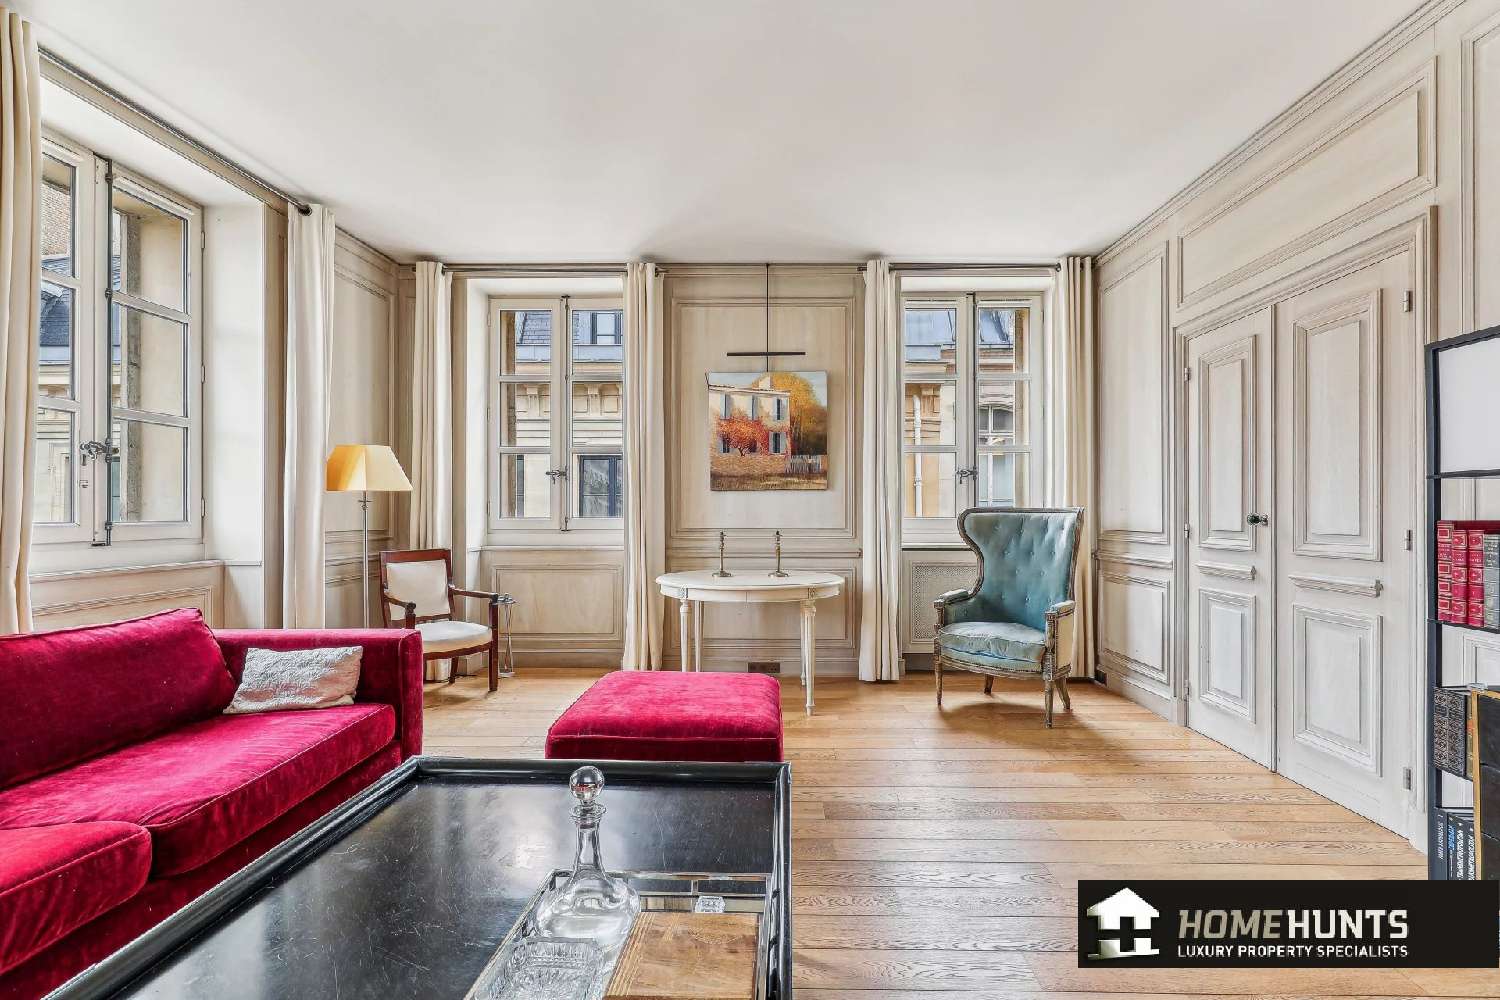  à vendre appartement Paris 17e Arrondissement Paris (Seine) 2